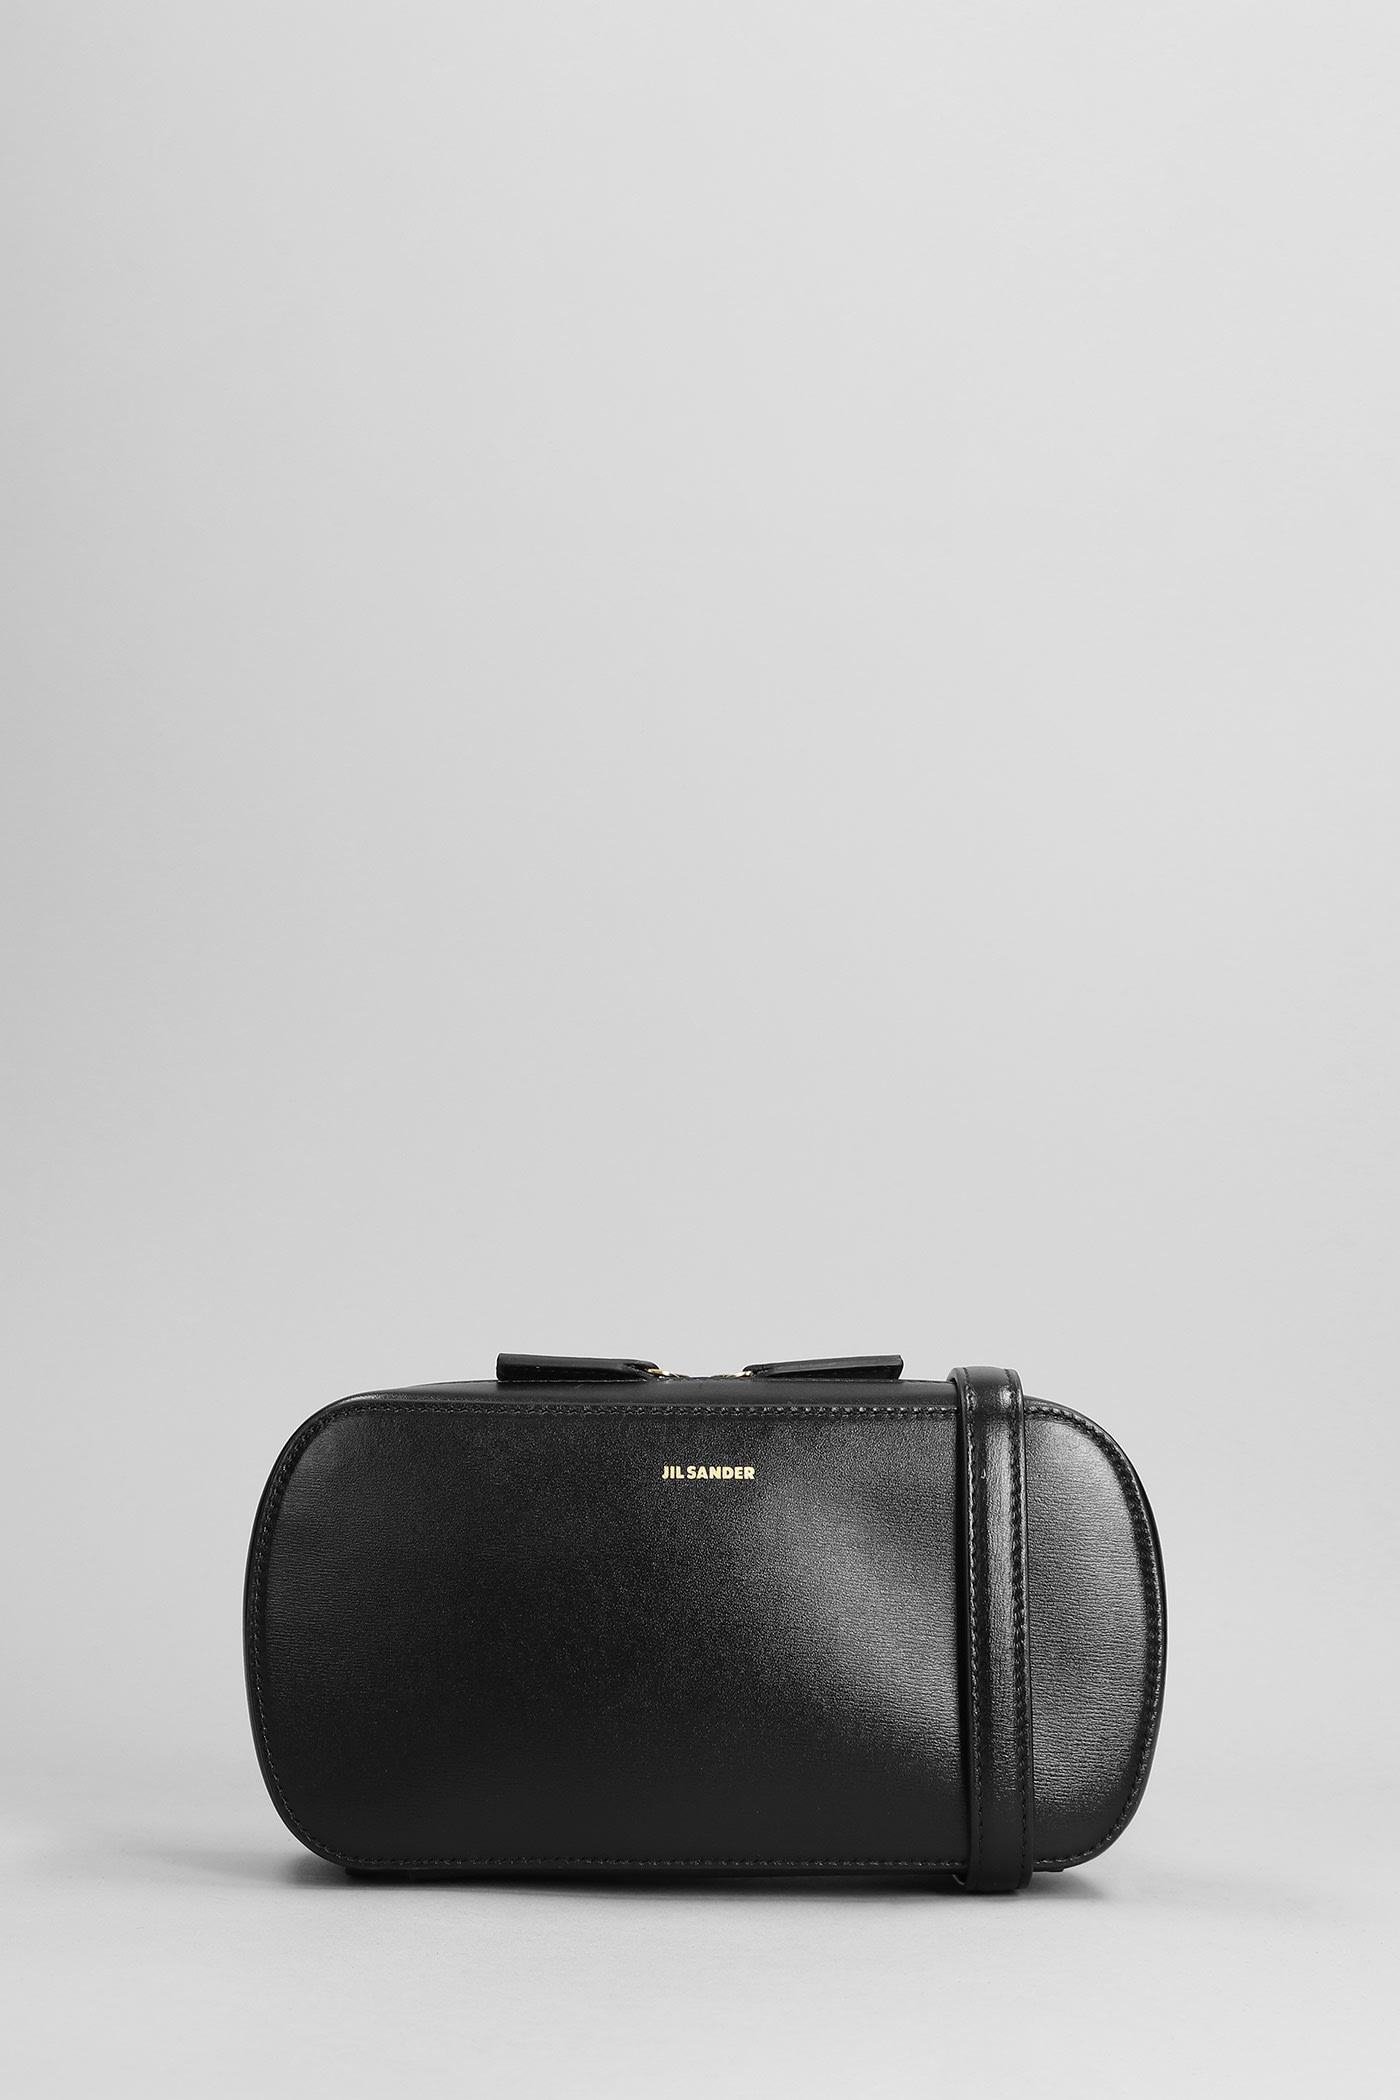 Jil Sander Tangle Sm Shoulder Bag In Black Leather | ModeSens